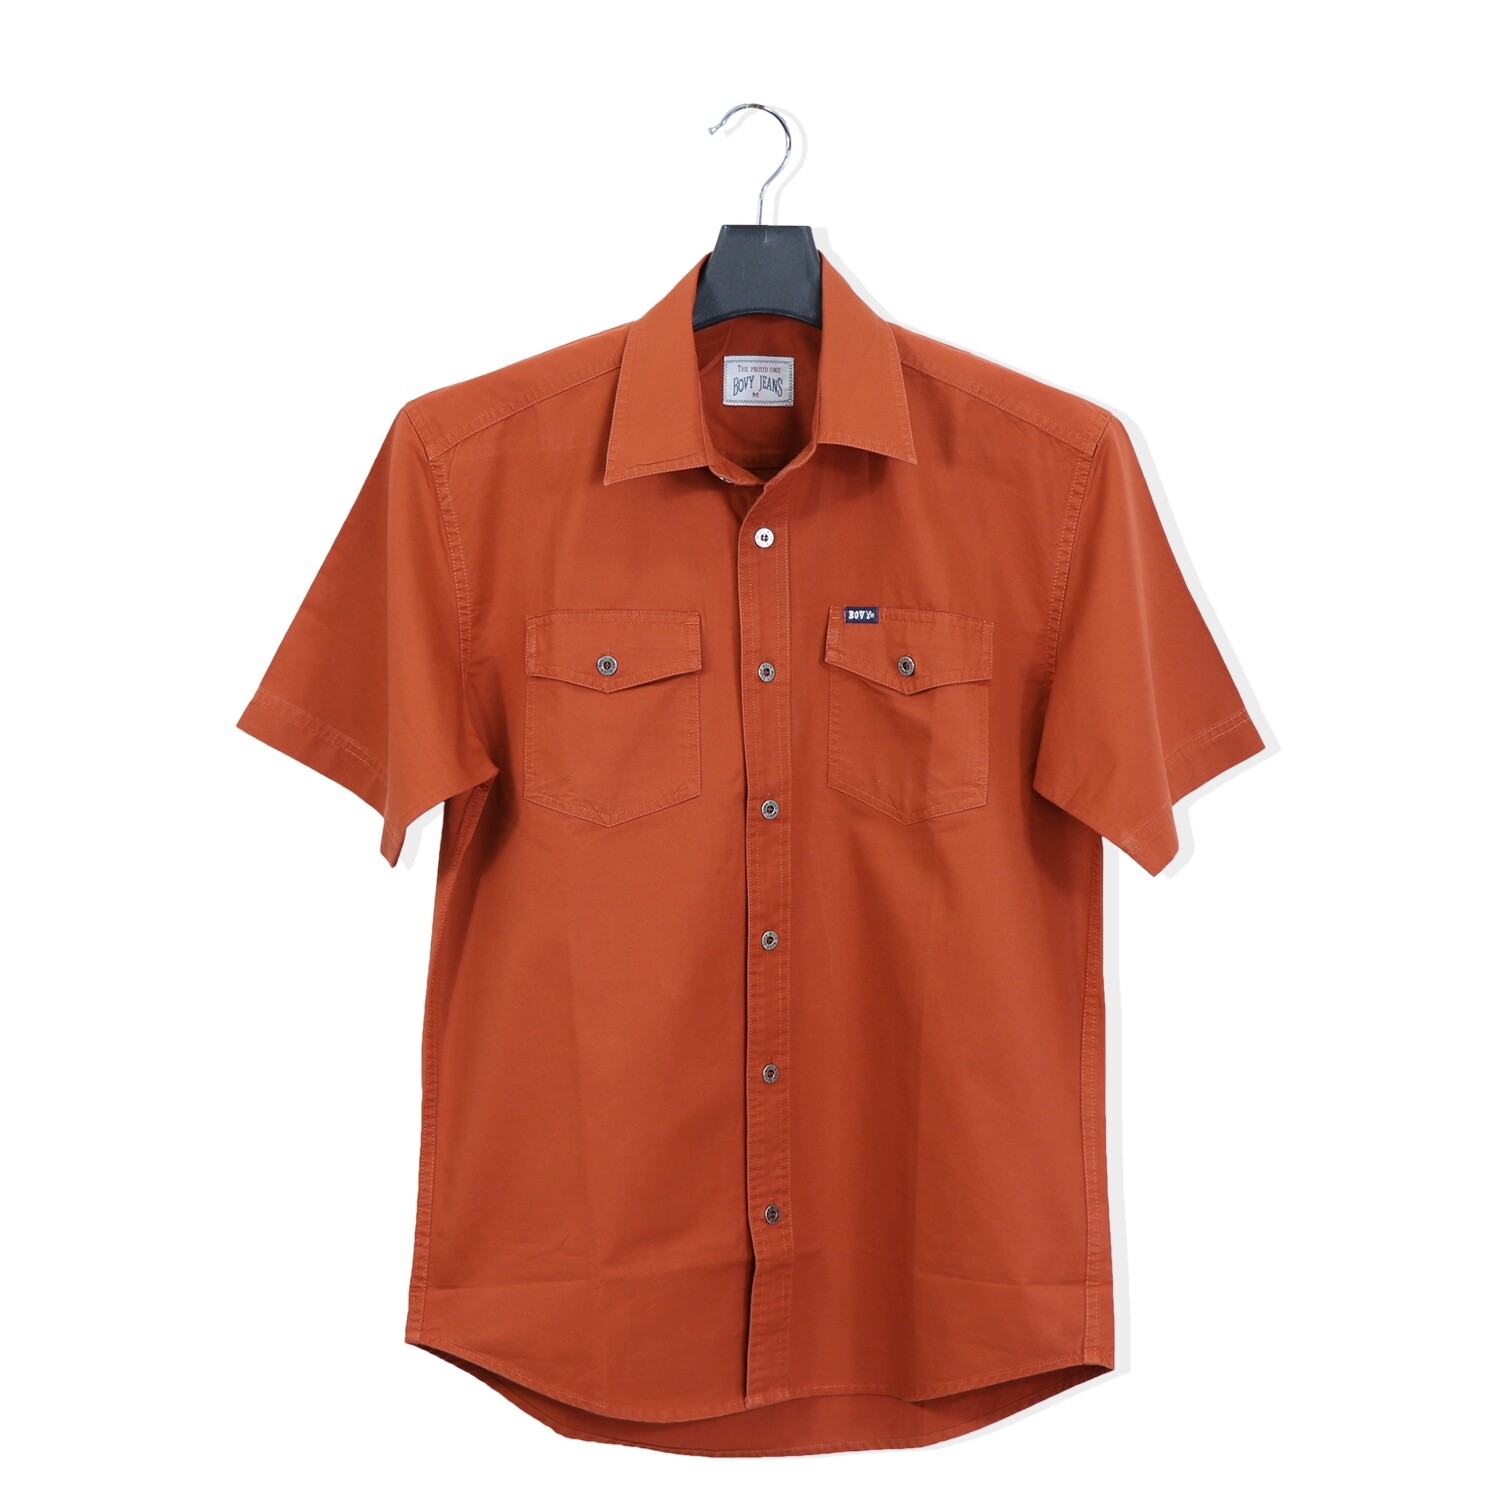 Bovy Orange Shirt  - เสื้อเชิ้ตแขนสั้นสีดำ  รุ่นBA 3596 - สี RD-09